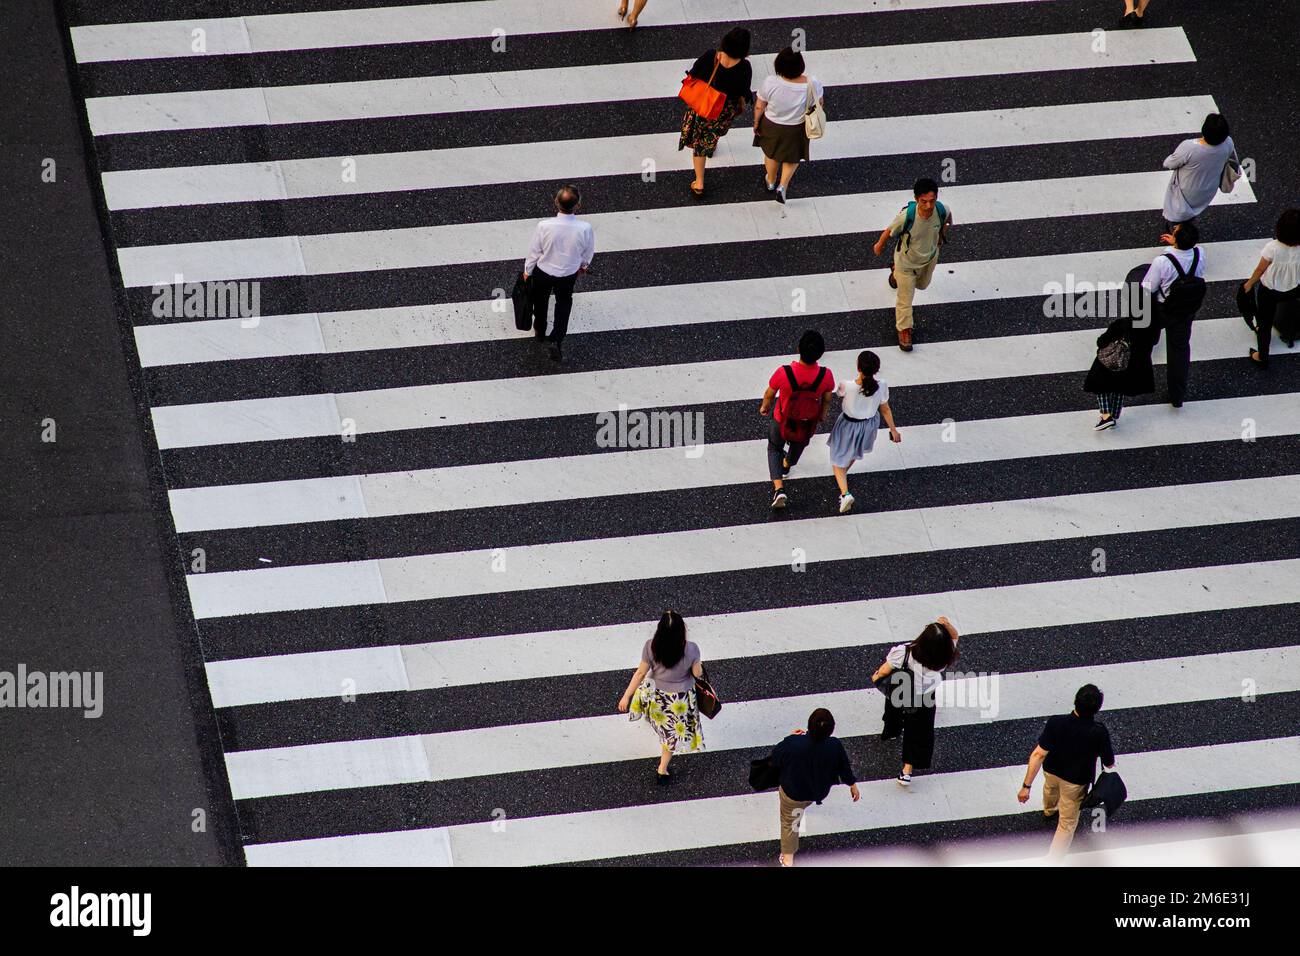 Tokio, Japan - 9 8 19: Menschen, die einen Zebrastreifen überqueren, von oben gesehen Stockfoto